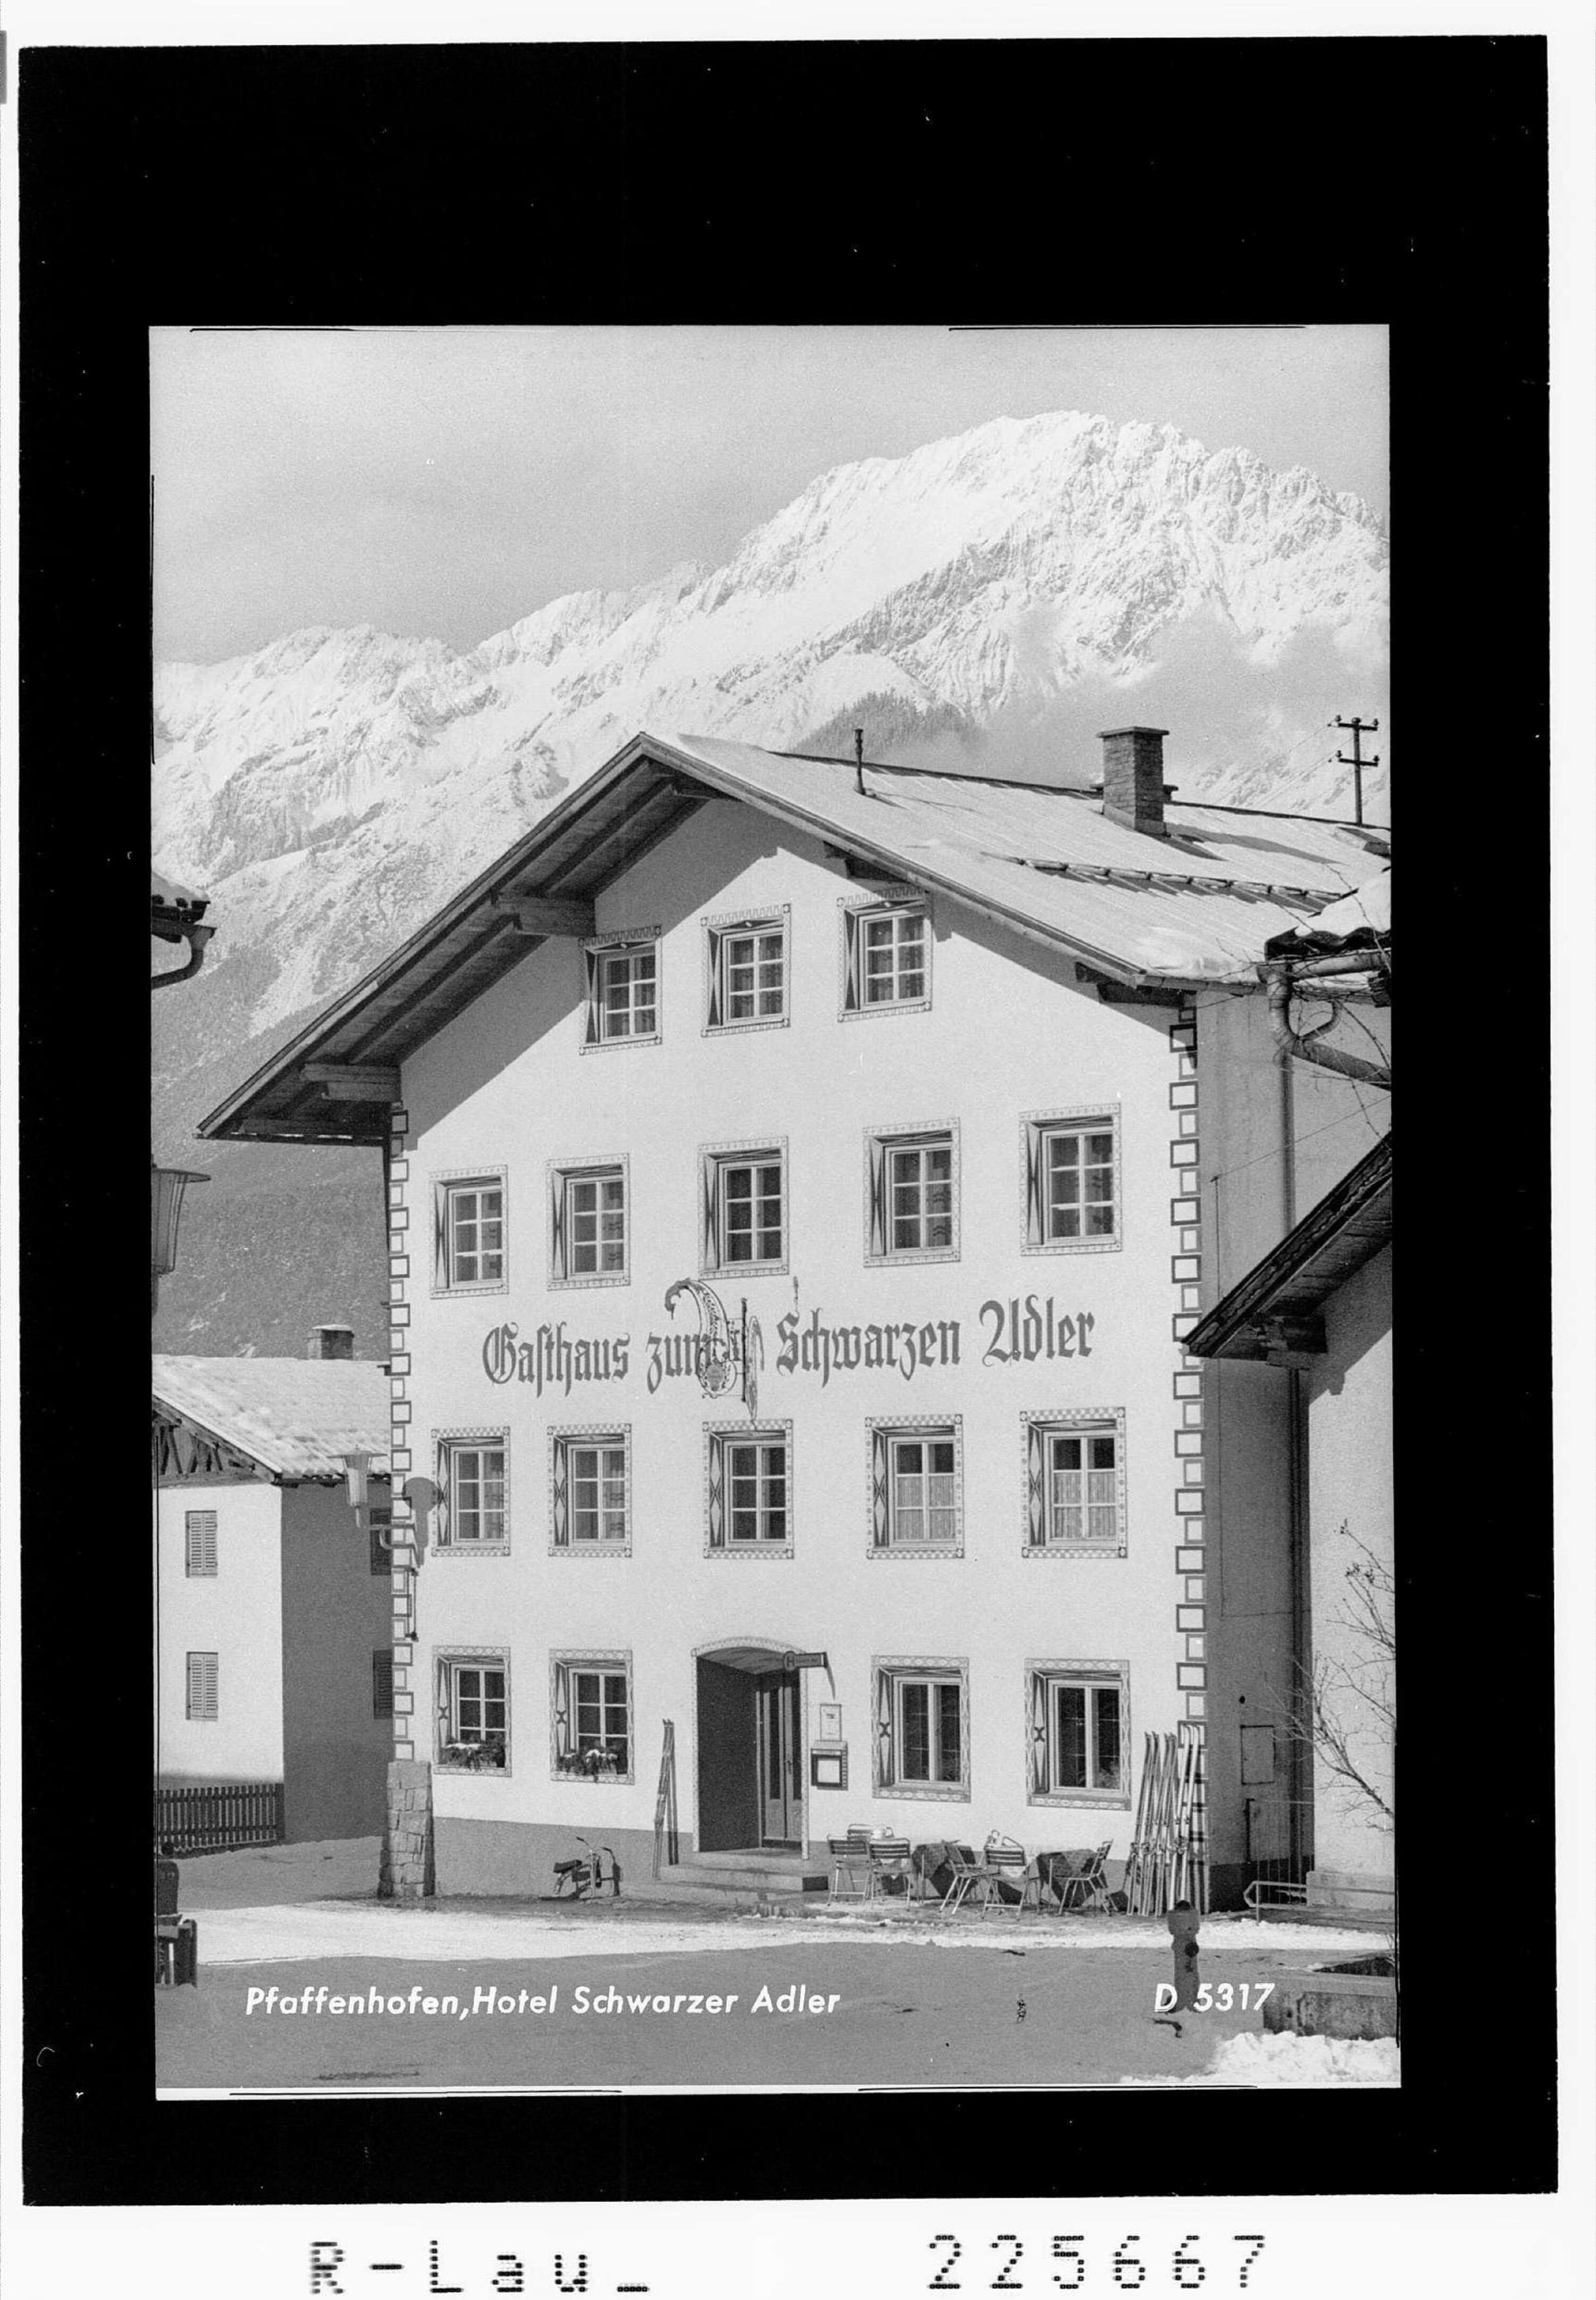 Pfaffenhofen / Hotel Schwarzer Adler></div>


    <hr>
    <div class=